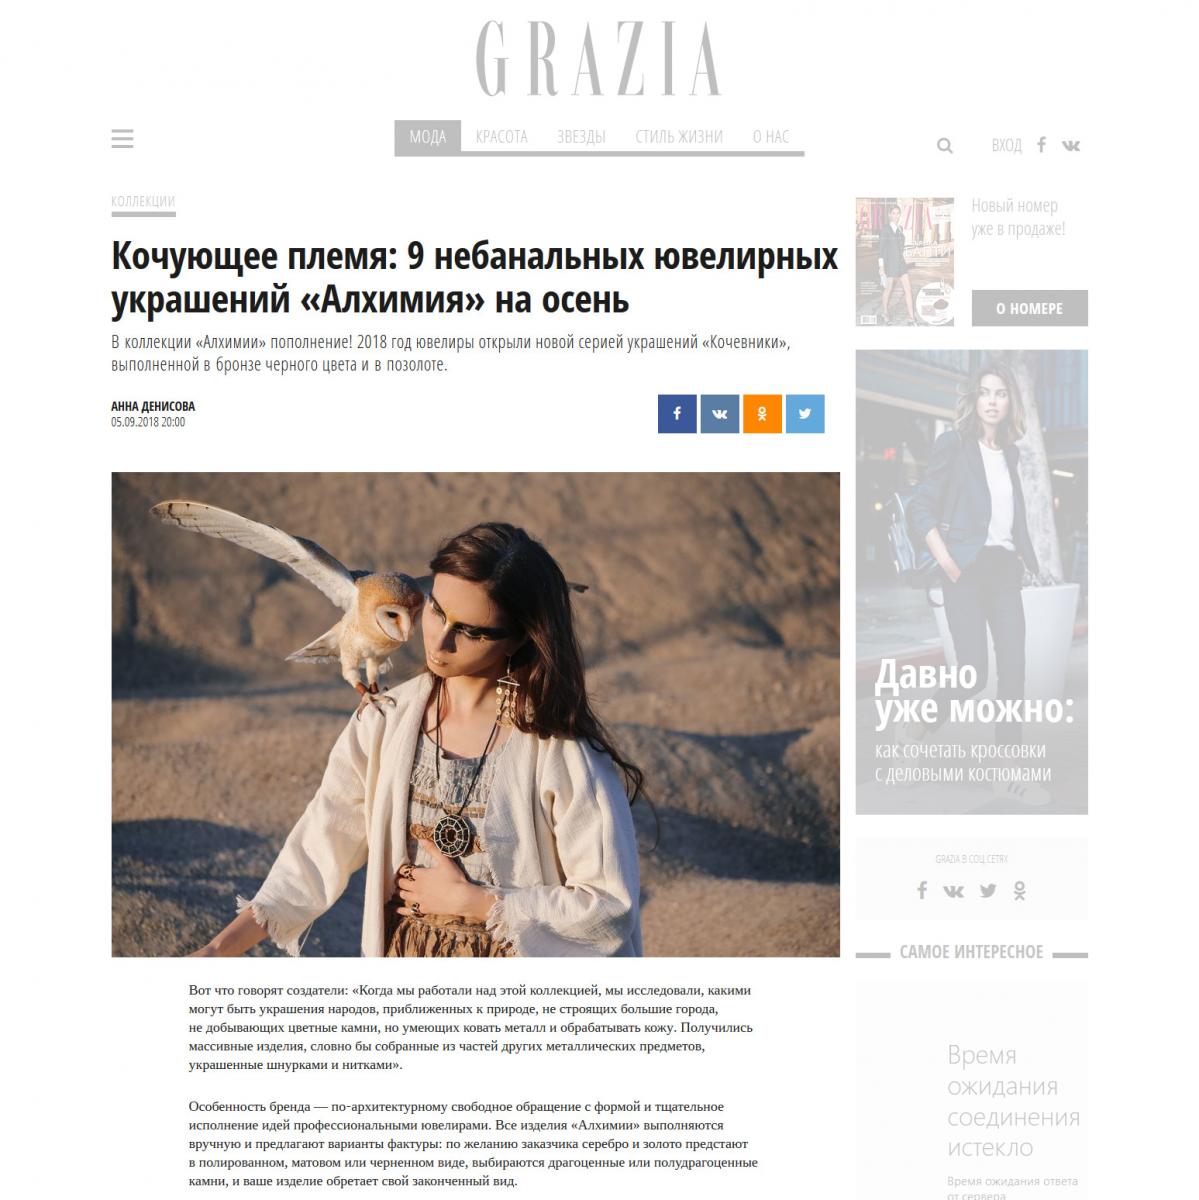 Публикация в жкрнале Graziamagazine.ru о коллекции «Кочевники», выполненной в бронзе